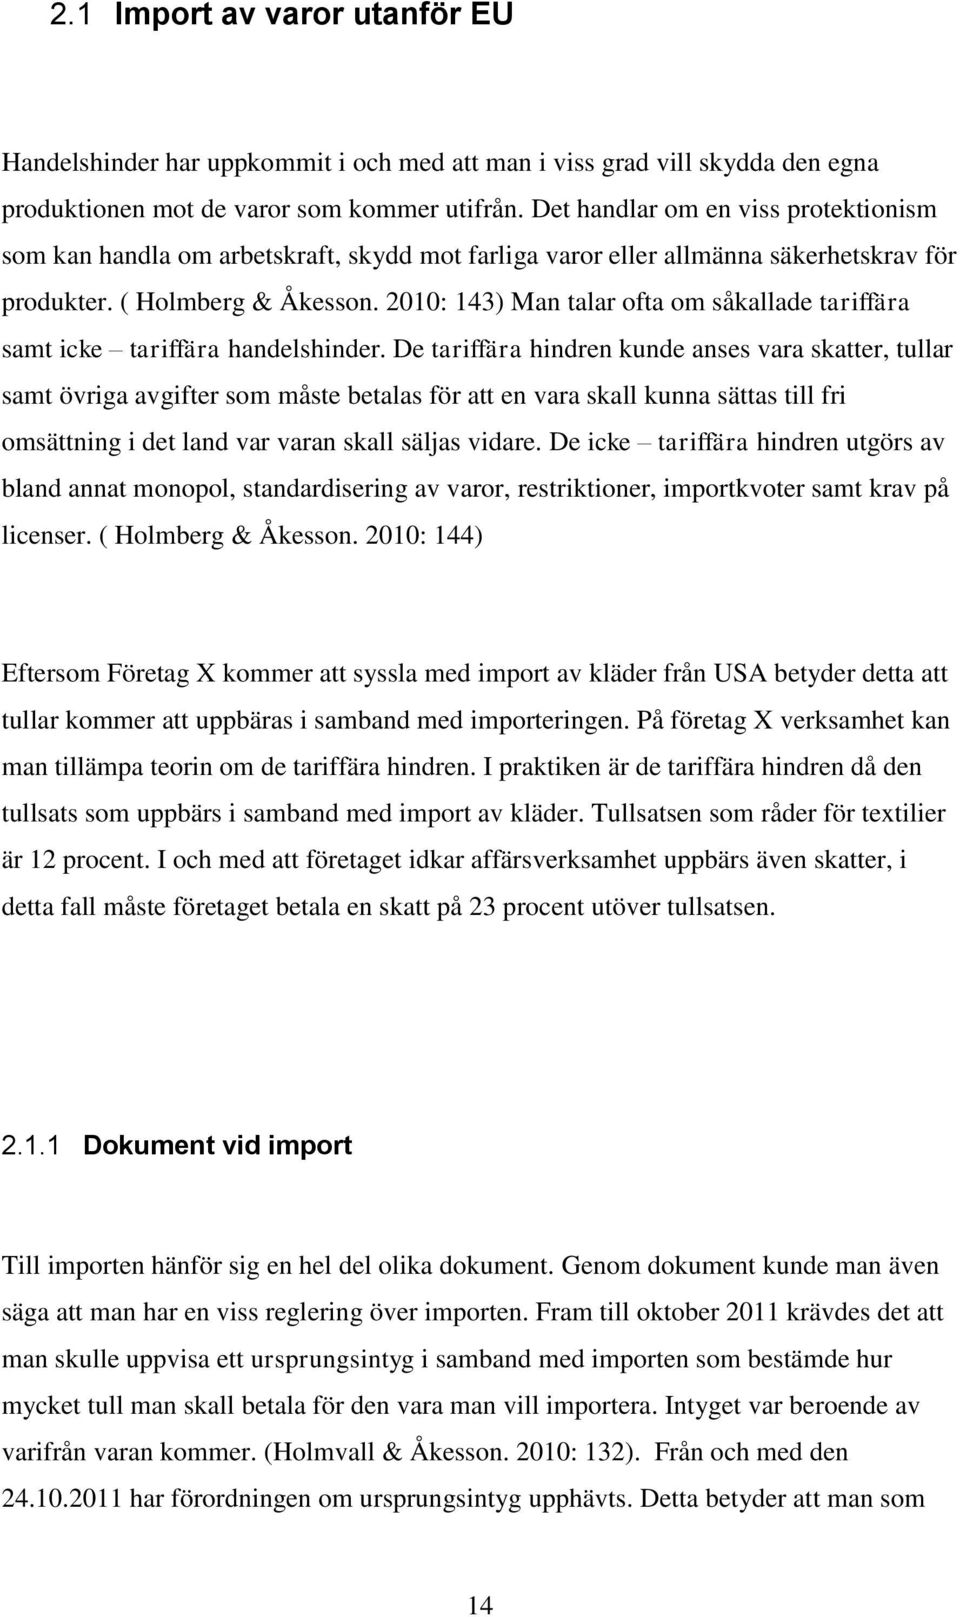 Import av kläder från USA till Finland - PDF Gratis nedladdning